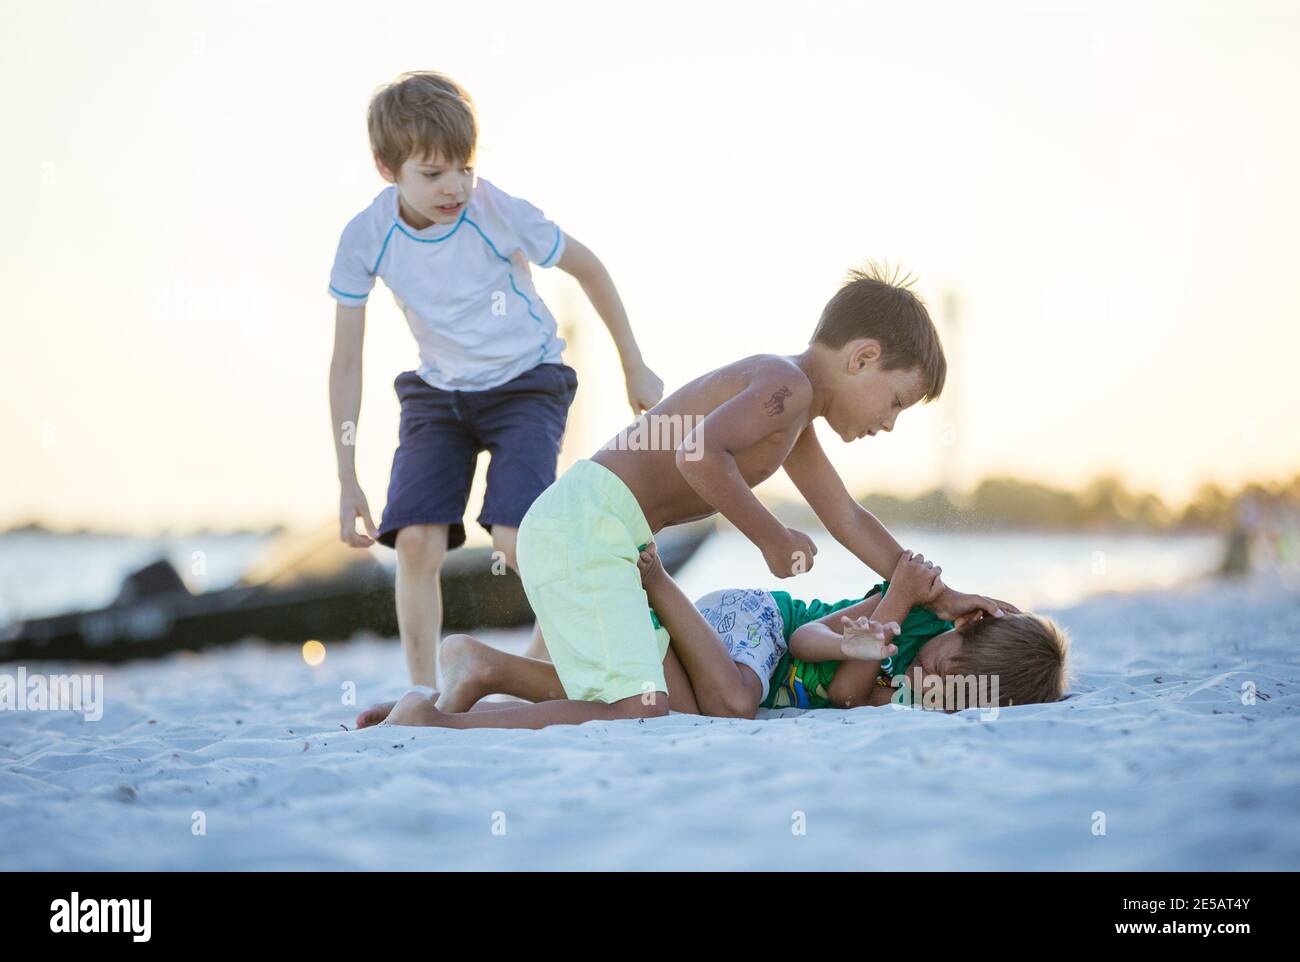 Junge Jungen kämpfen am Strand, älterer Junge gehen, um jüngere zu treffen. Rivalität der Geschwister. Stockfoto